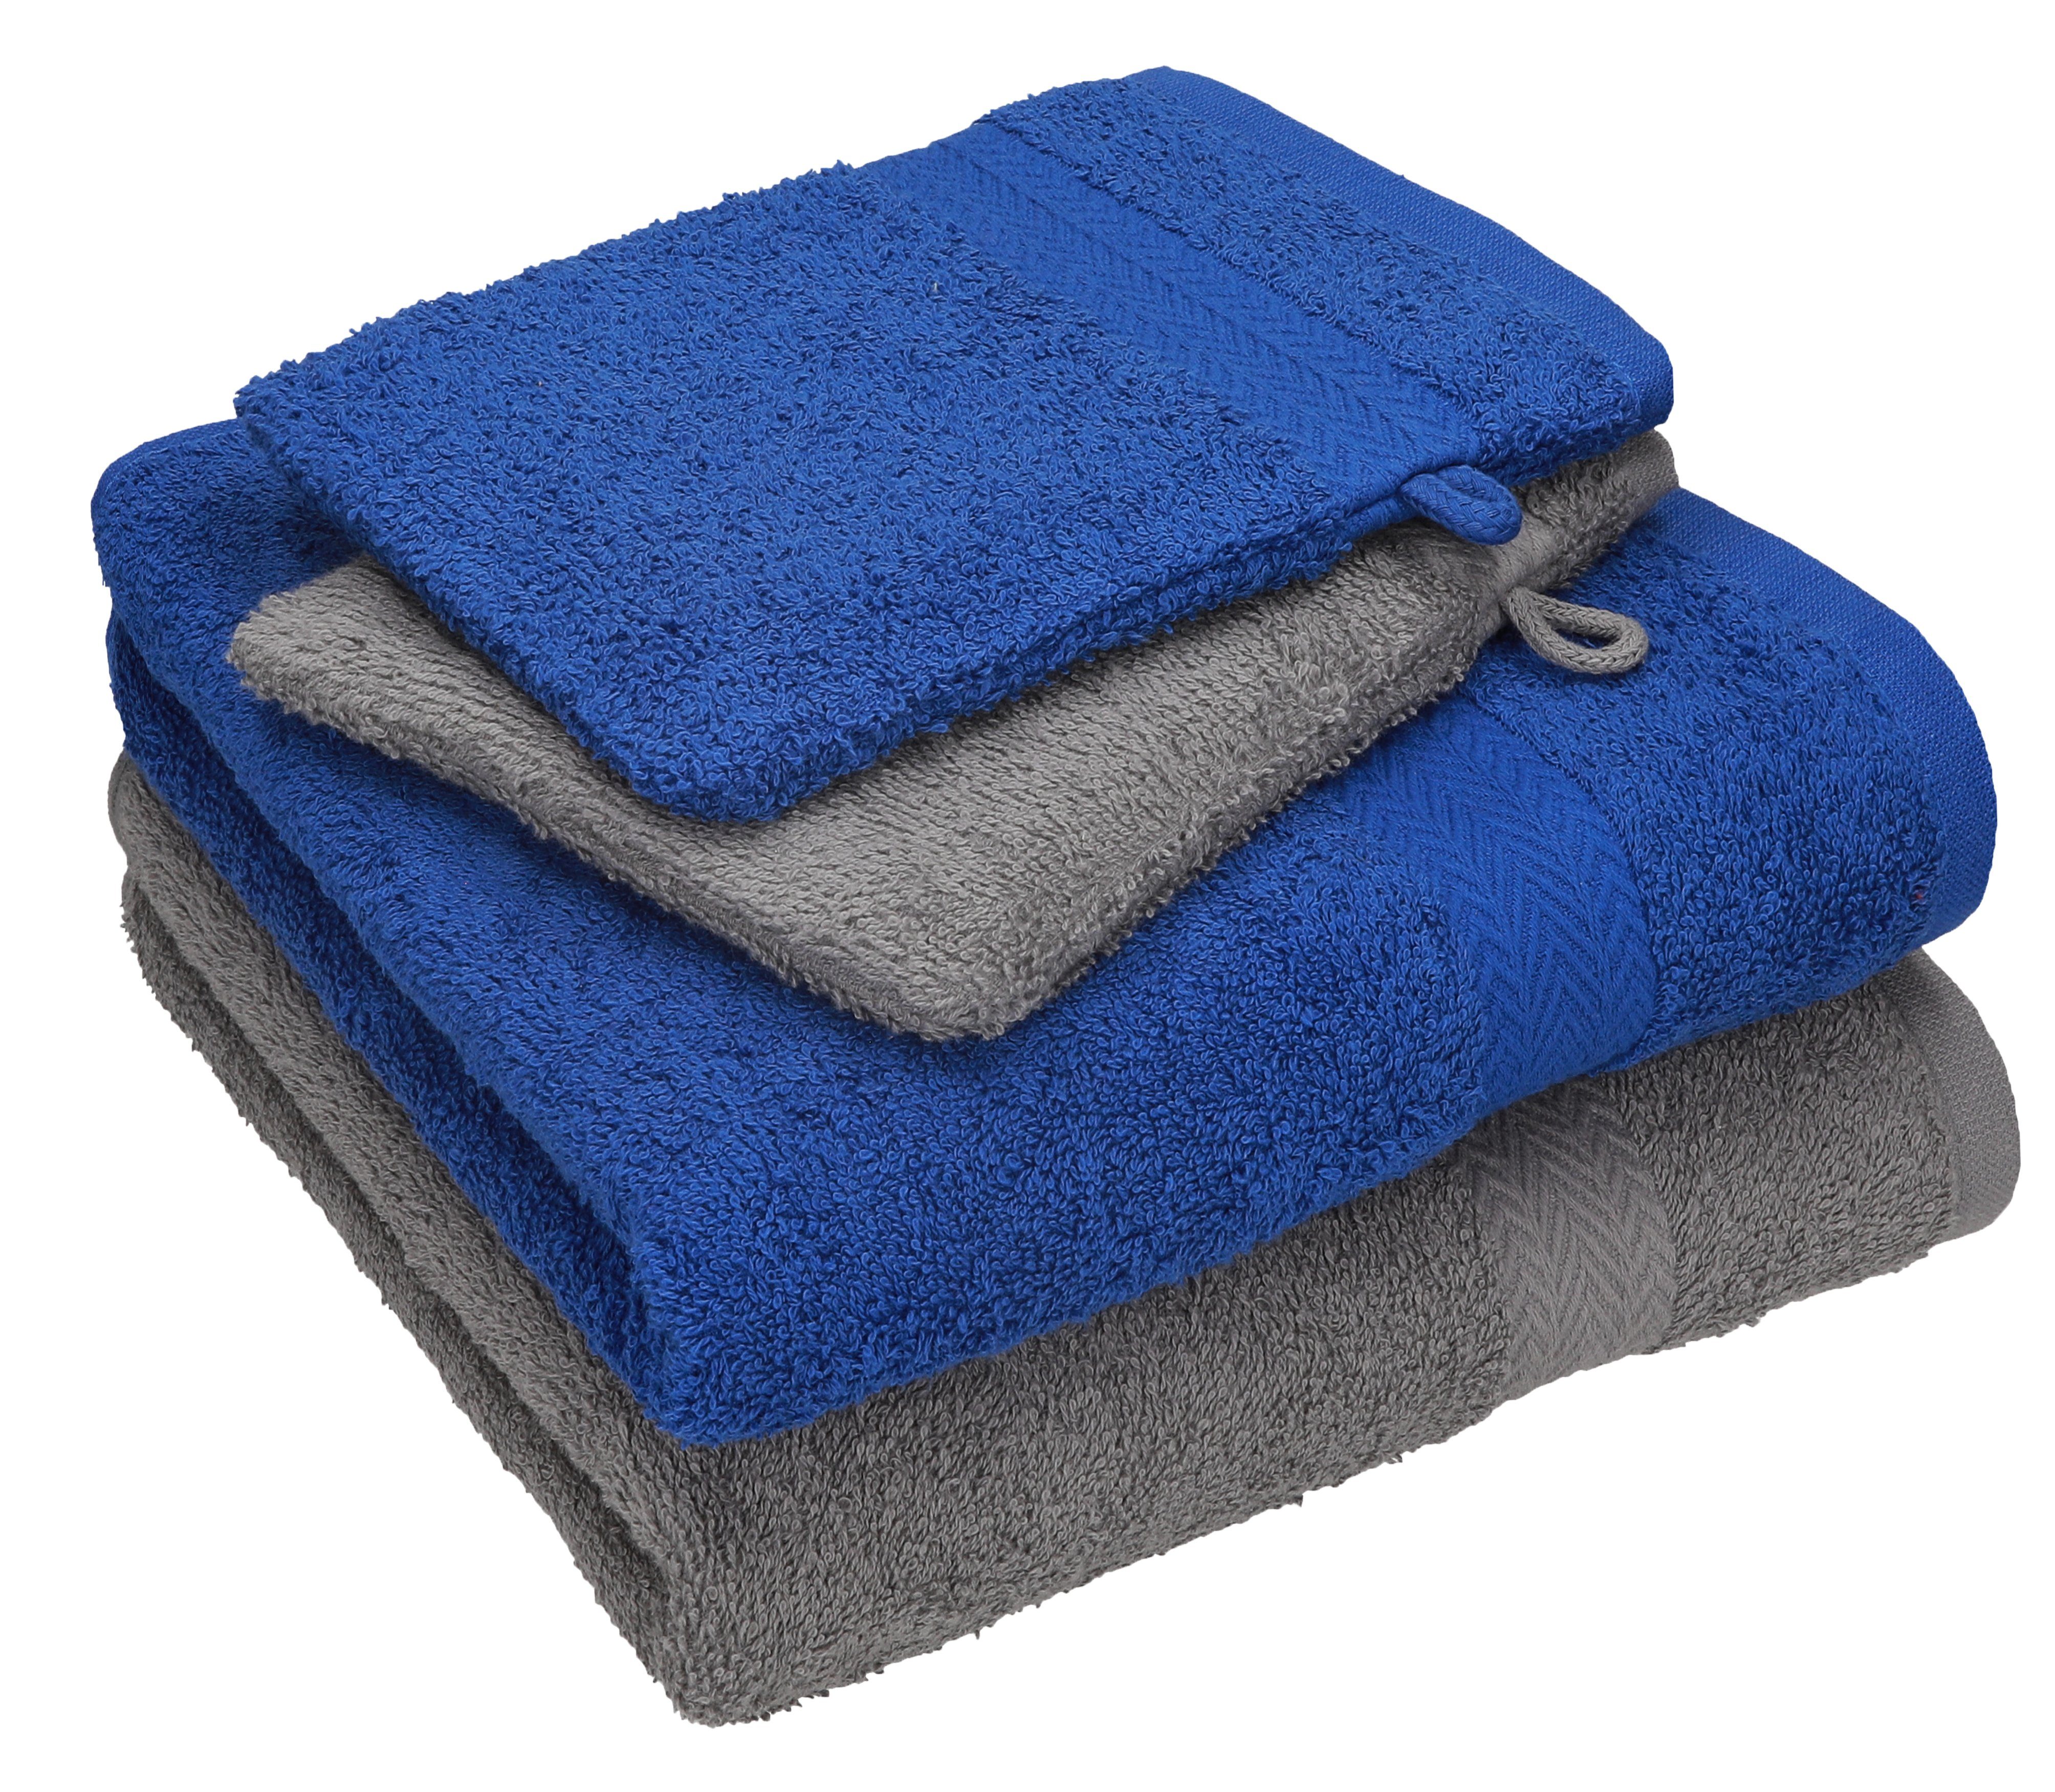 Betz Handtuch Set 4 2 anthrazit 100% Waschhandschuhe, Baumwolle royalblau 2 Handtücher Pack - grau TLG. Happy Set Handtuch Baumwolle 100